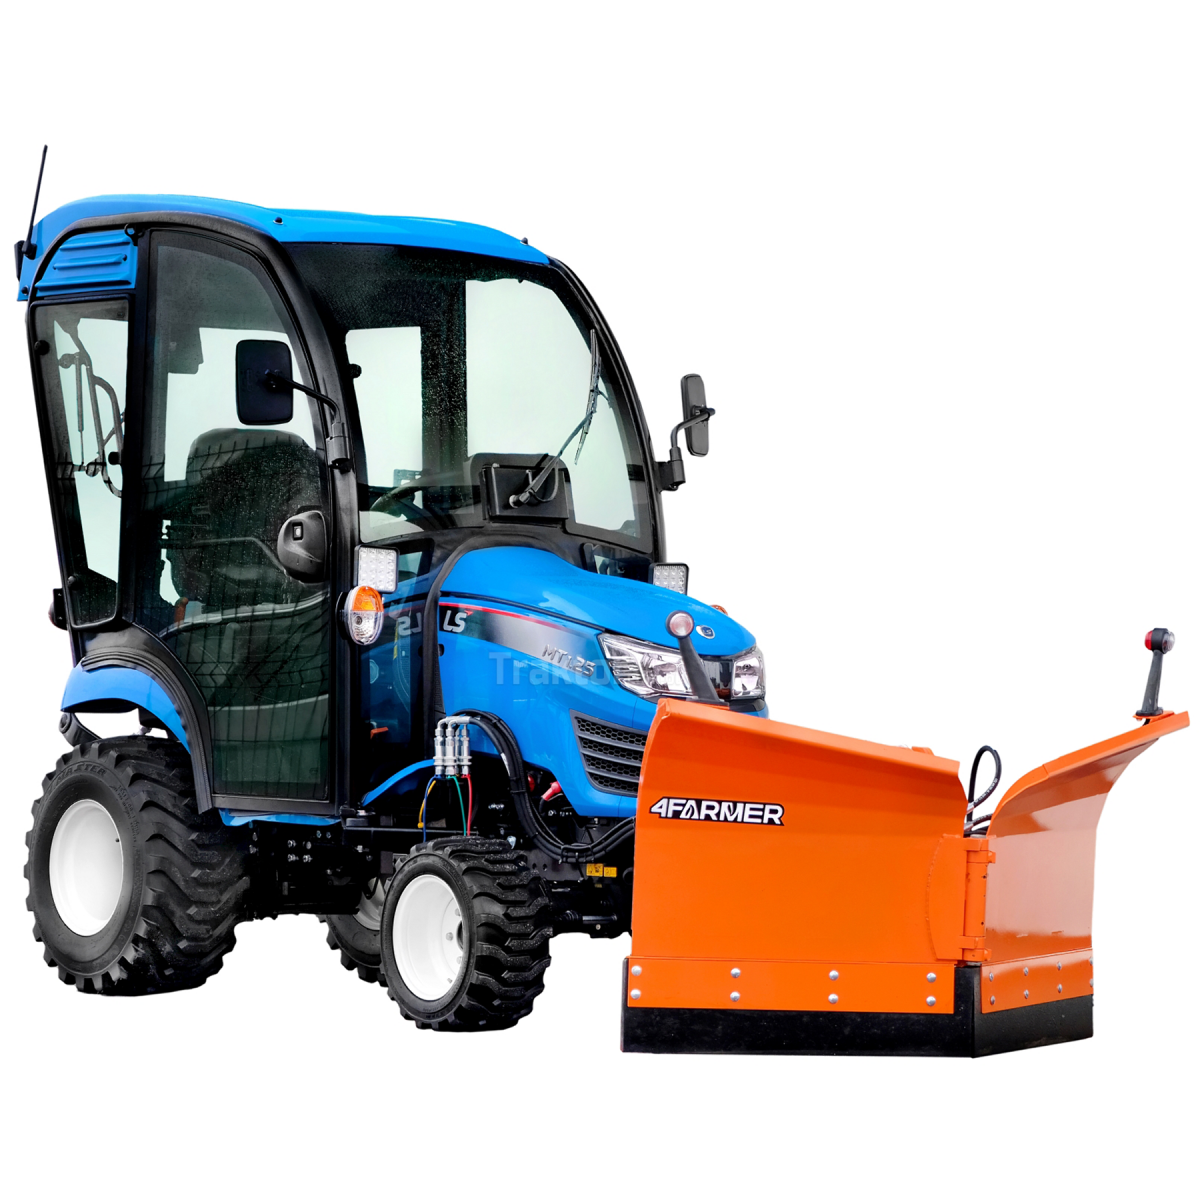 LS Traktor MT1,25 4x4 - 24,7 HP / CAB / IND + Vario šípový snežný pluh 150 cm, hydraulický (TUZ) 4FARMER